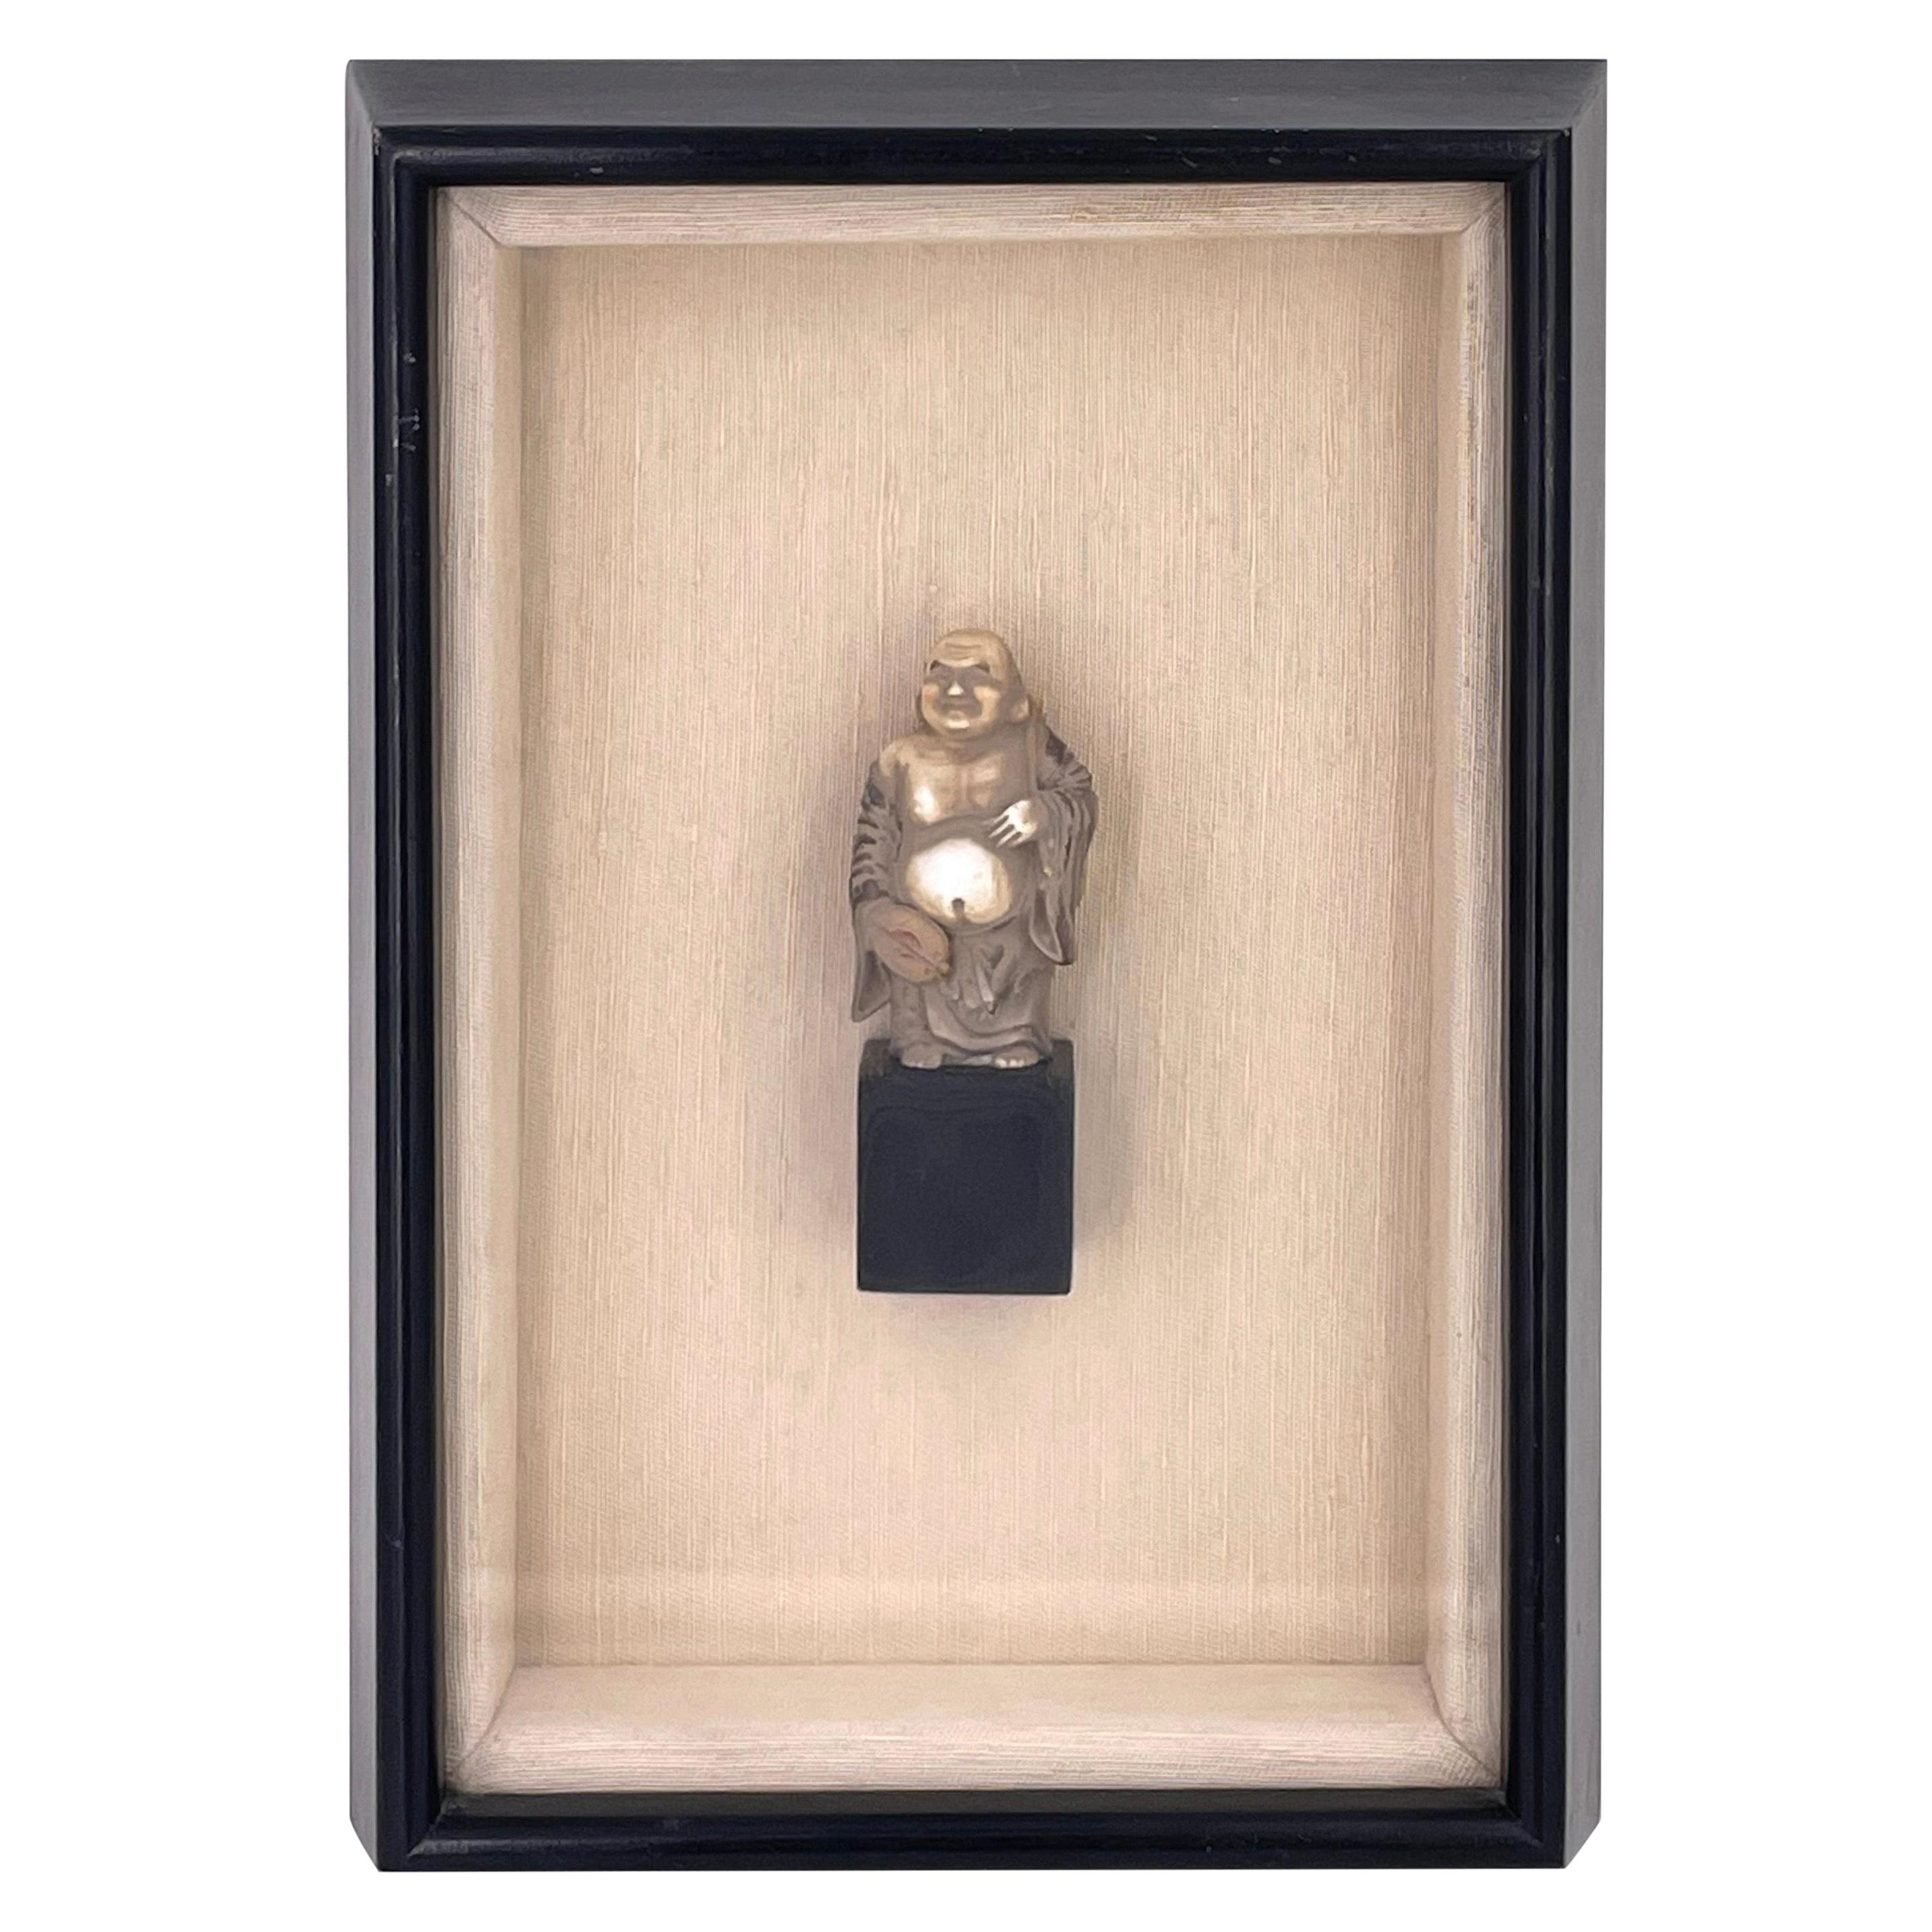 Framed Shadow Box Resin Buddha Figurine